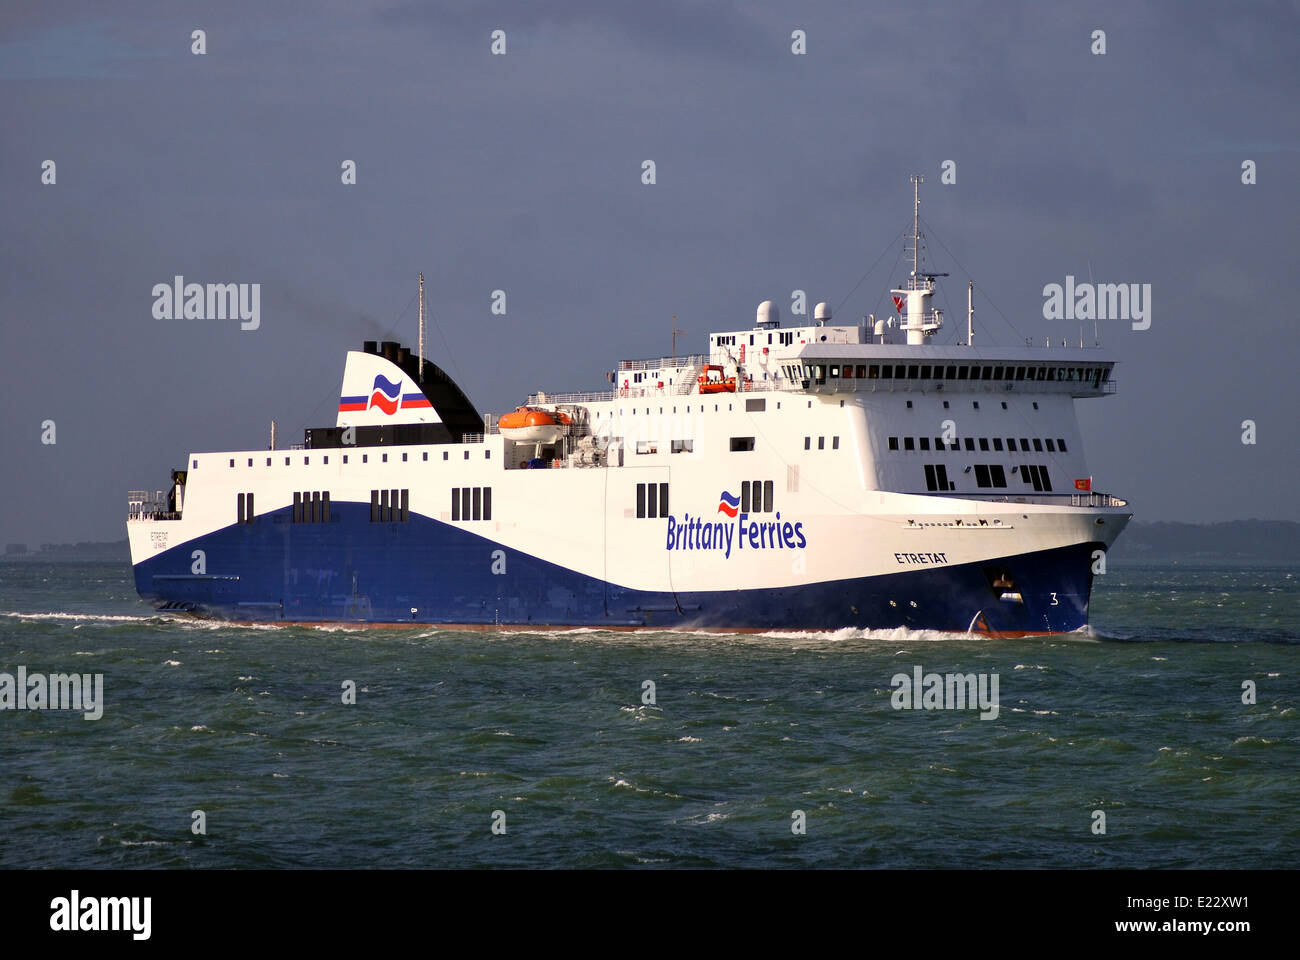 Le navire de Brittany Ferries Portsmouth entre Etretat après un passage à niveau à partir de Le Havre. Banque D'Images